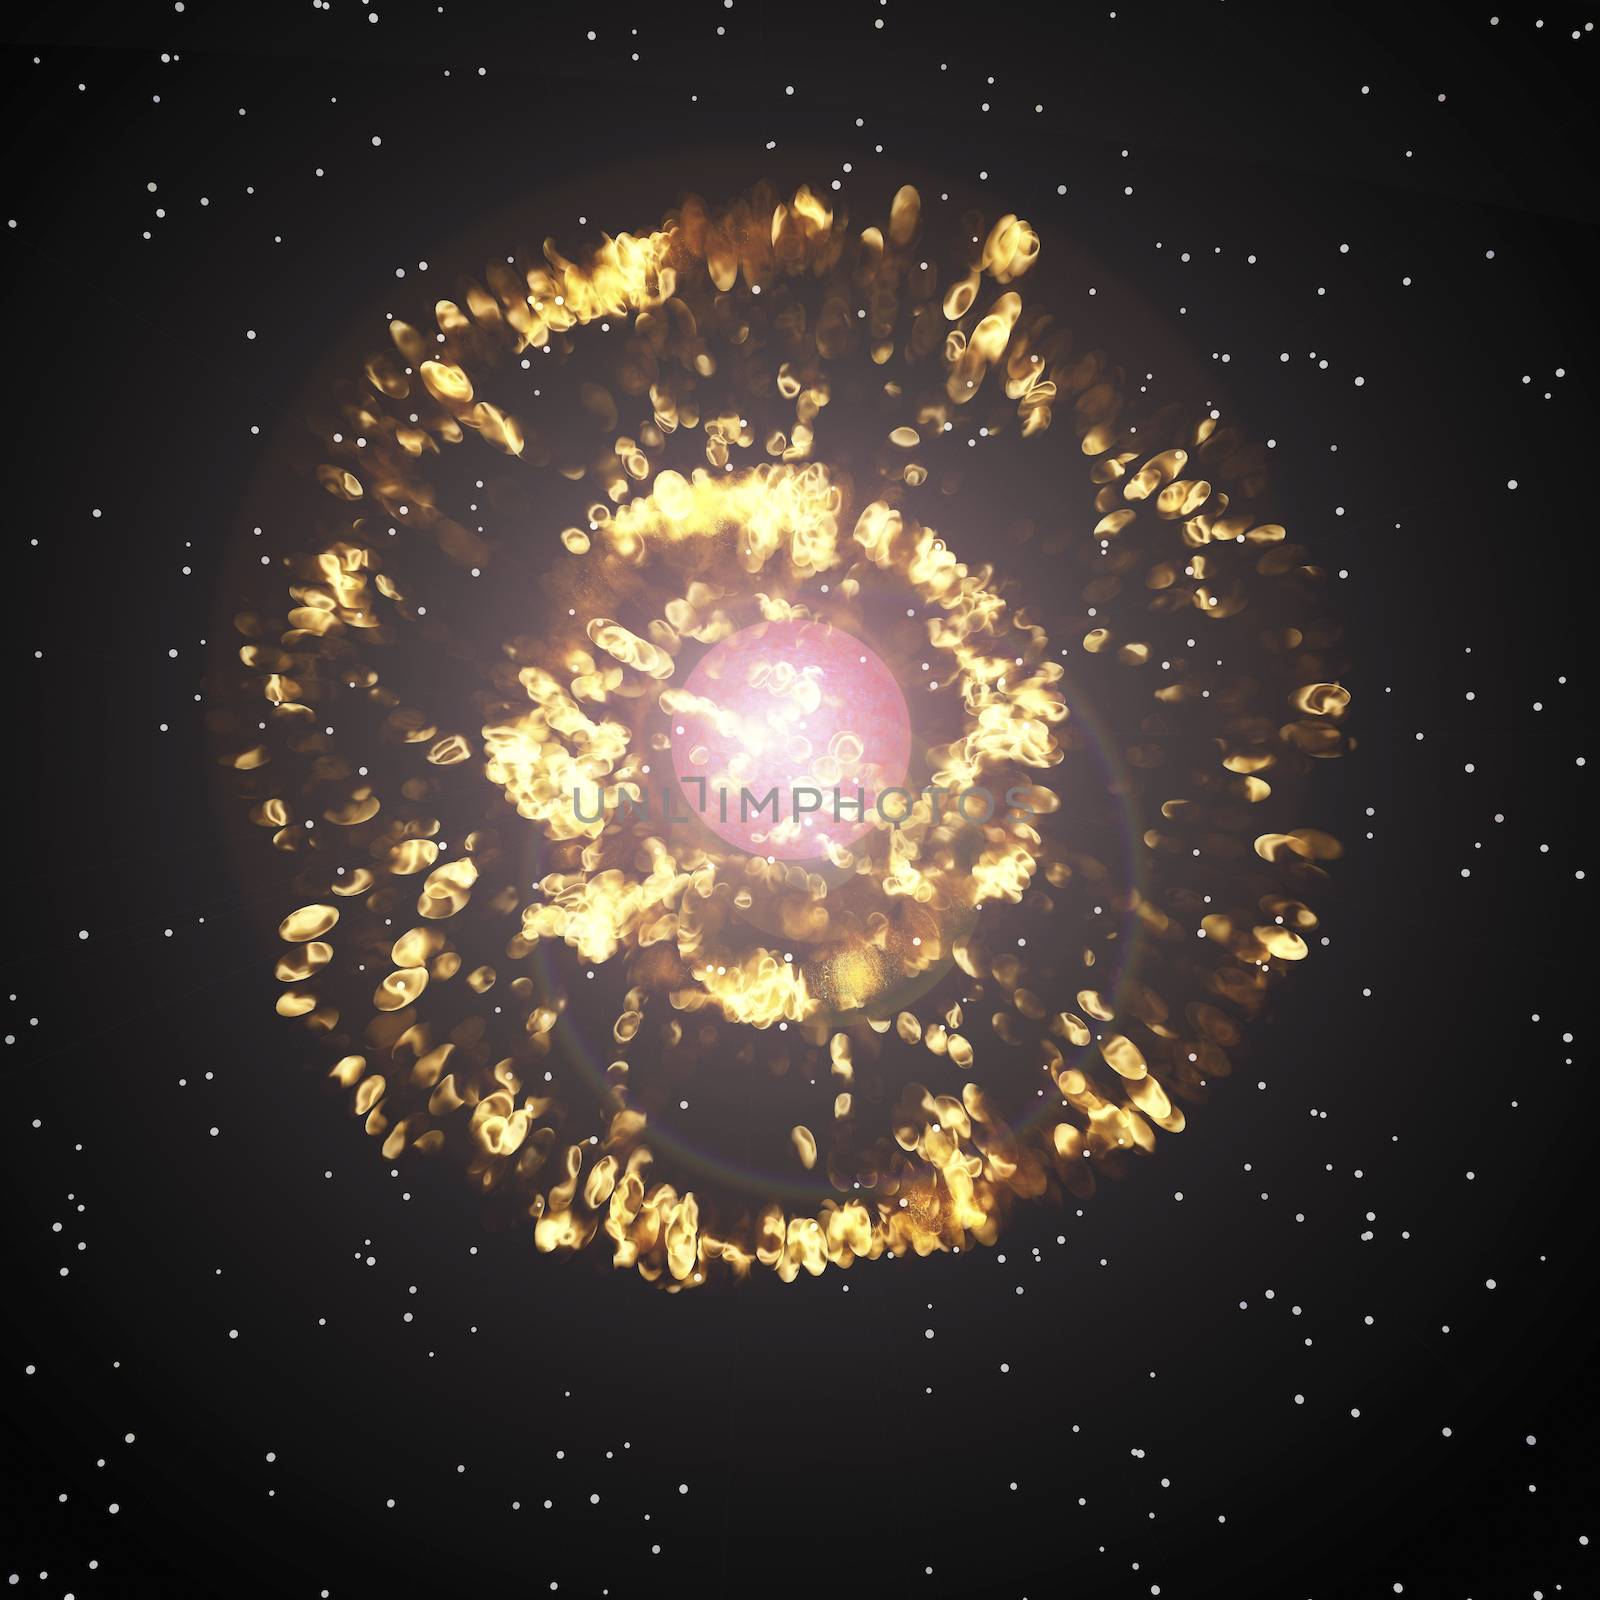 Digital visualization of a super nova